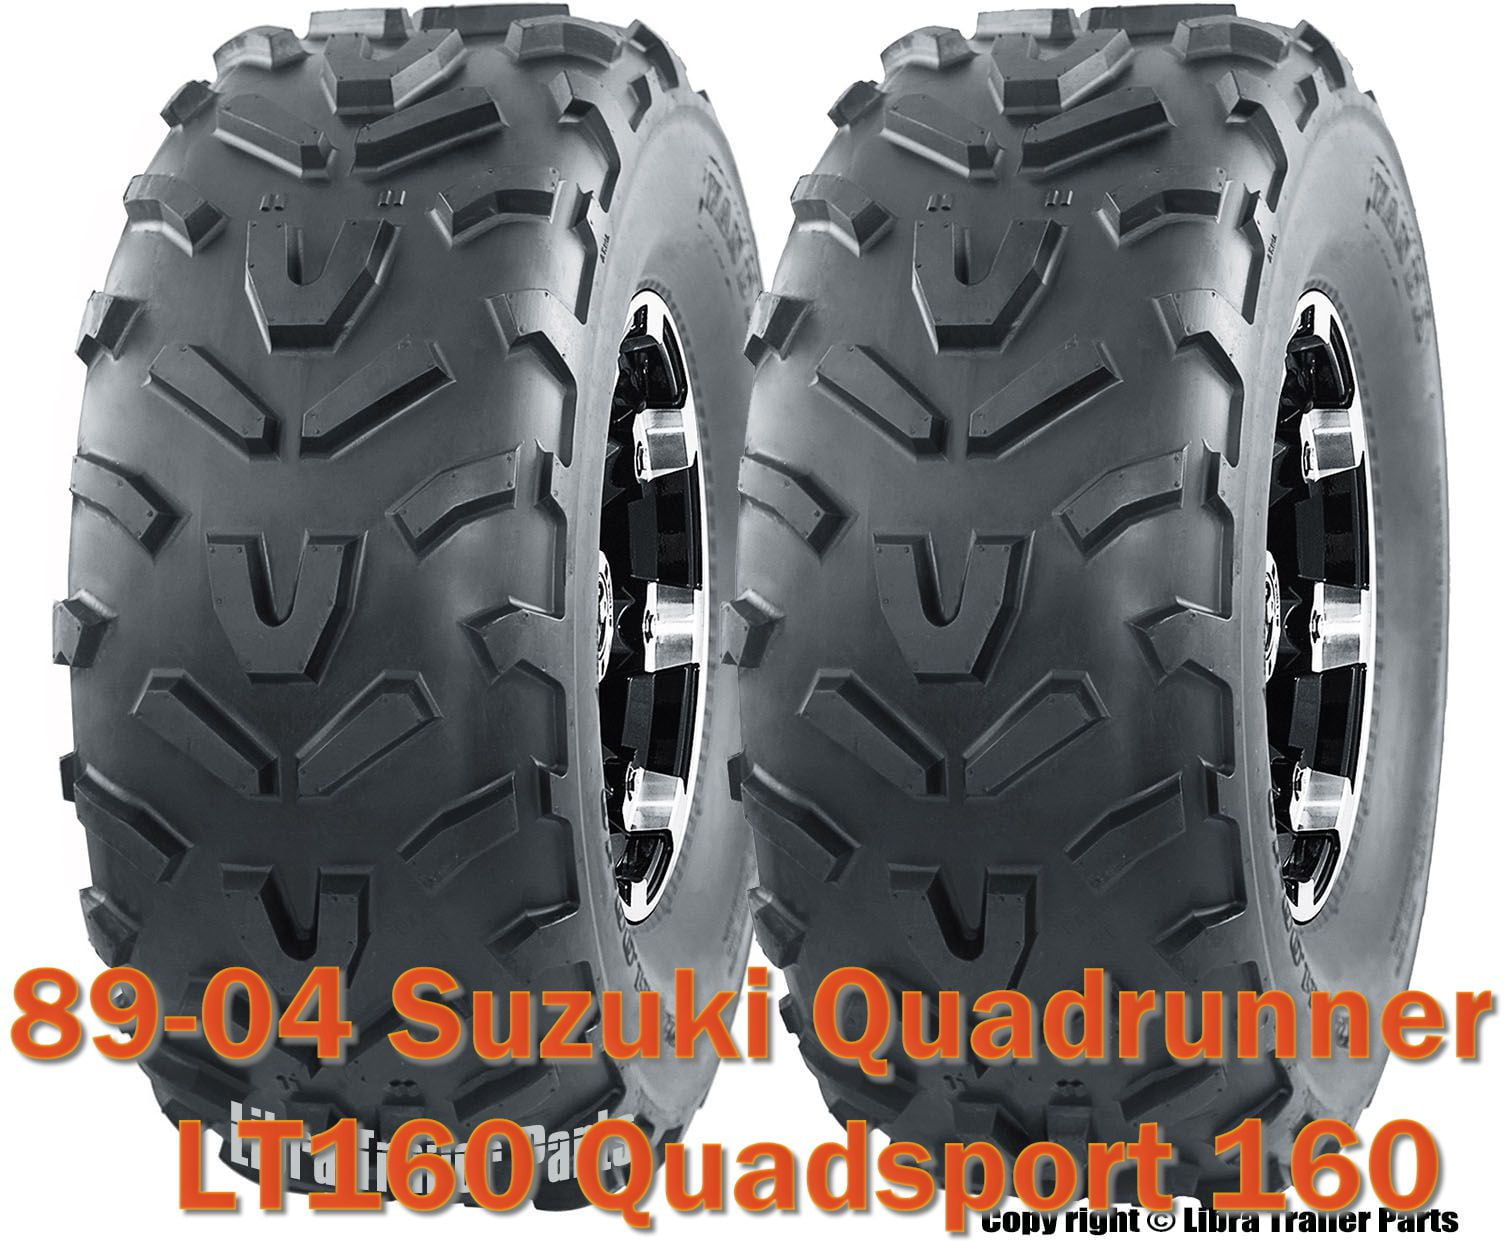 Suzuki Quadrunner Lt160 Quadsport 160